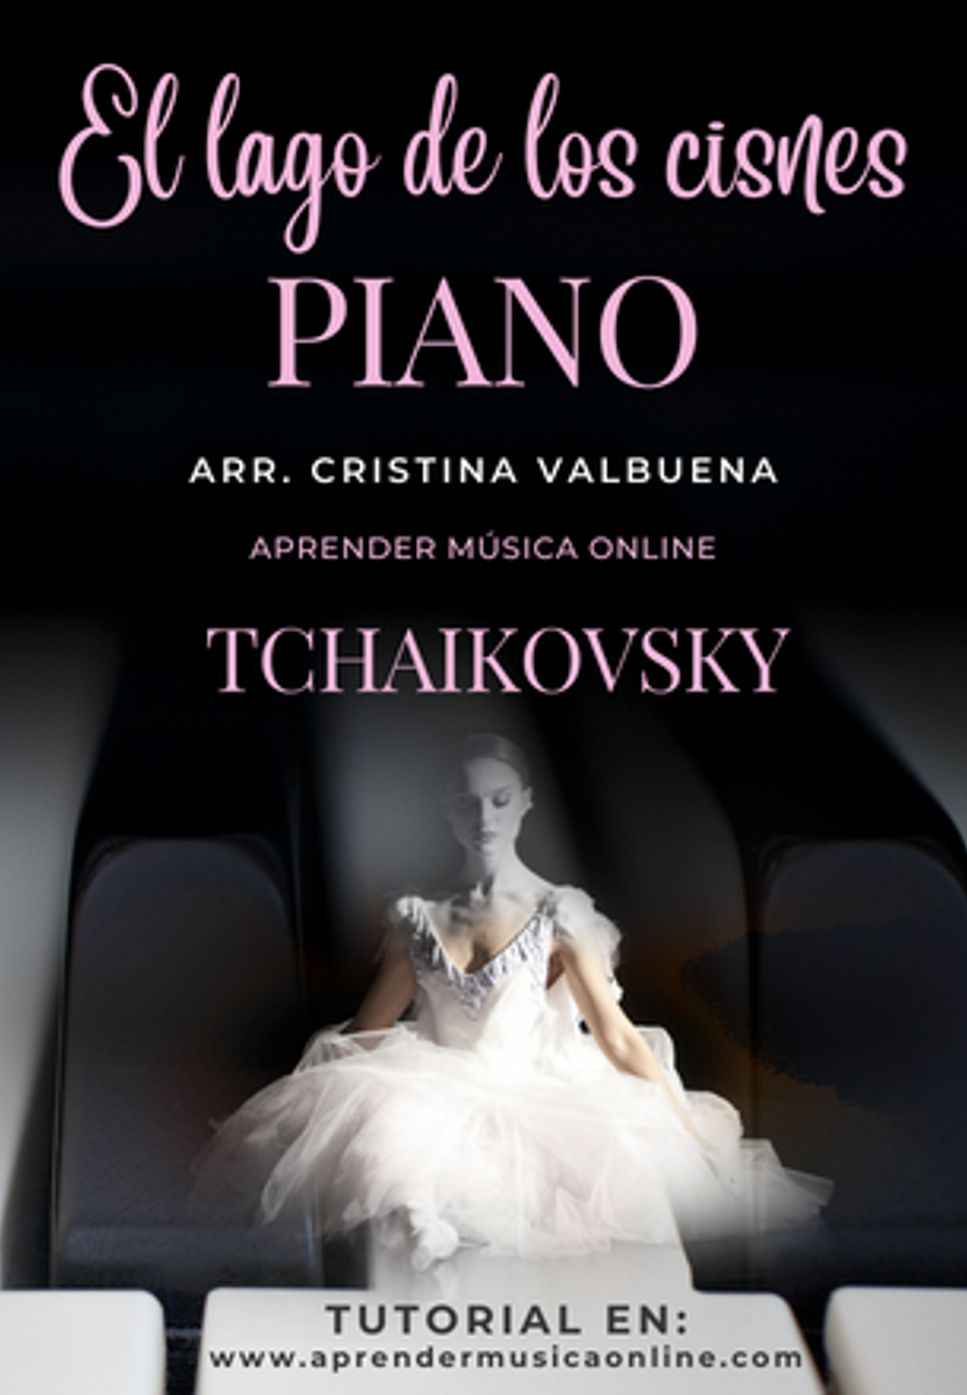 Tchaikovsky - El lago de los cisnes by Cristina Valbuena